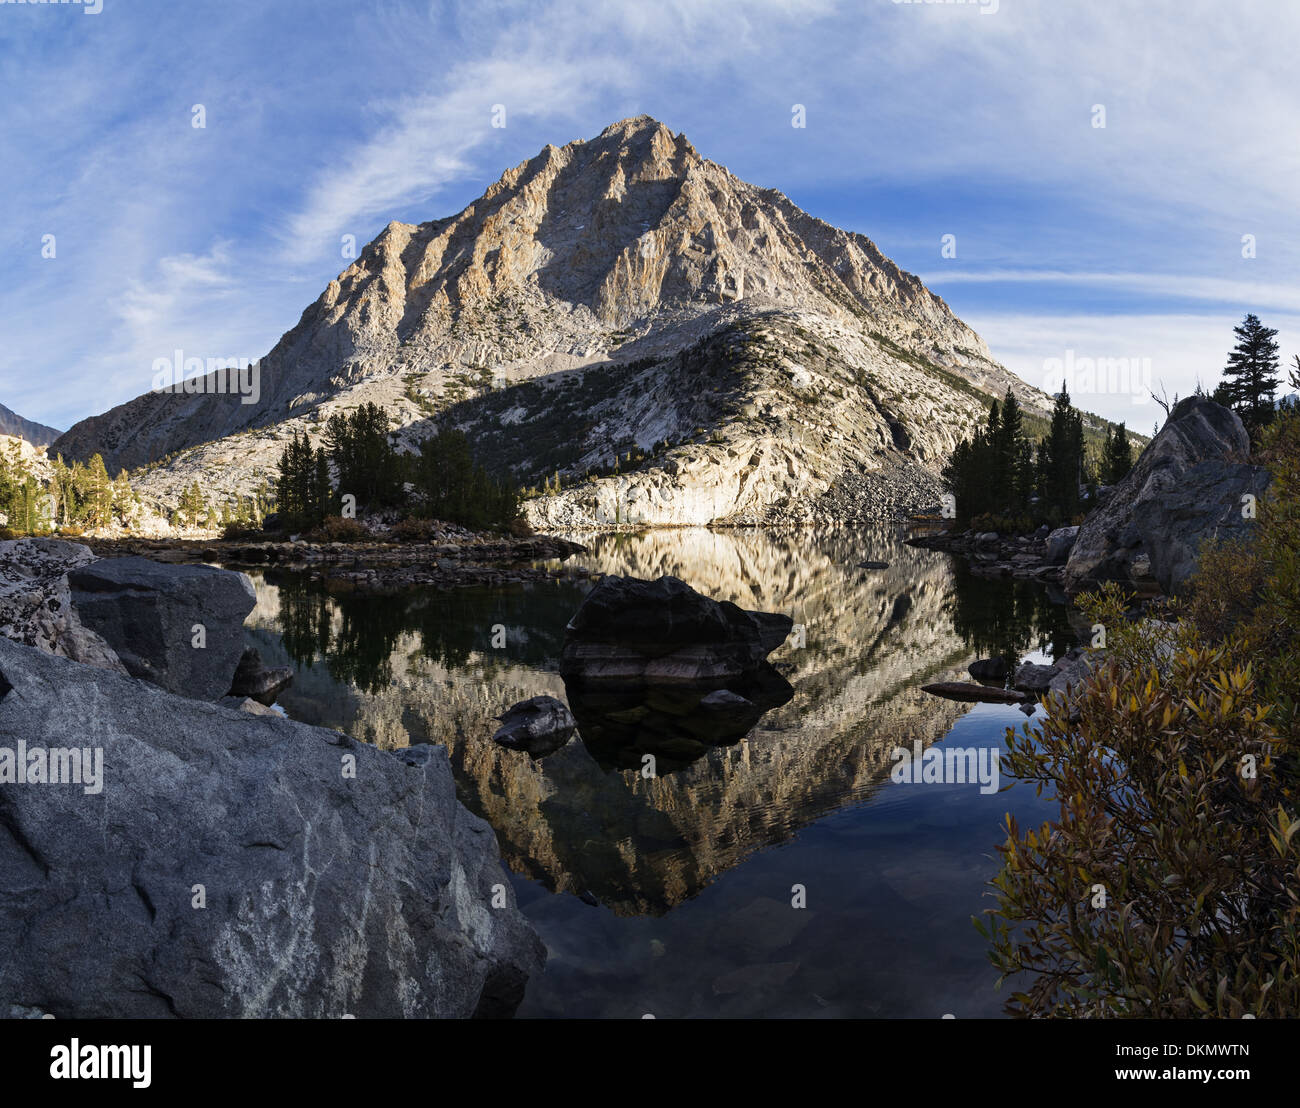 Reflet de la montagne dans le lac Pine dans les montagnes de la Sierra Nevada Banque D'Images